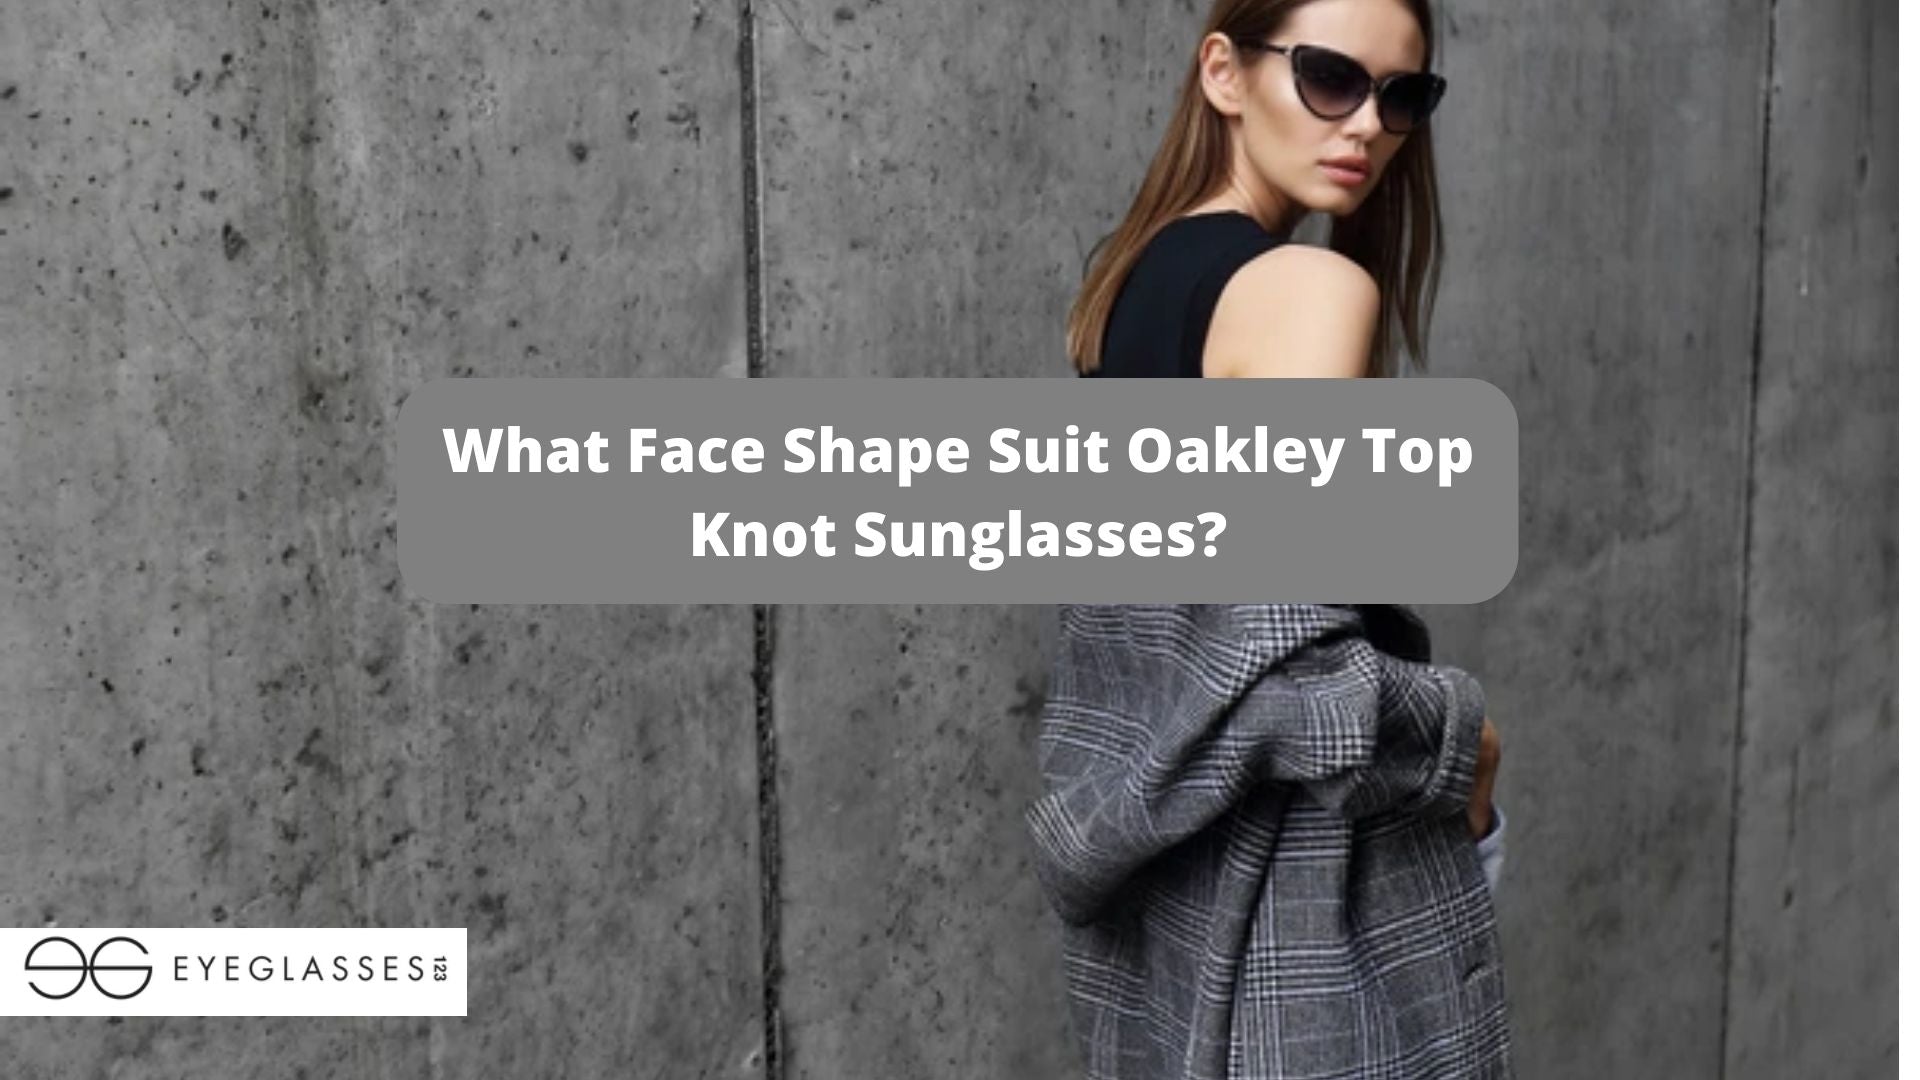 What Face Shape Suit Oakley Top Knot Sunglasses?